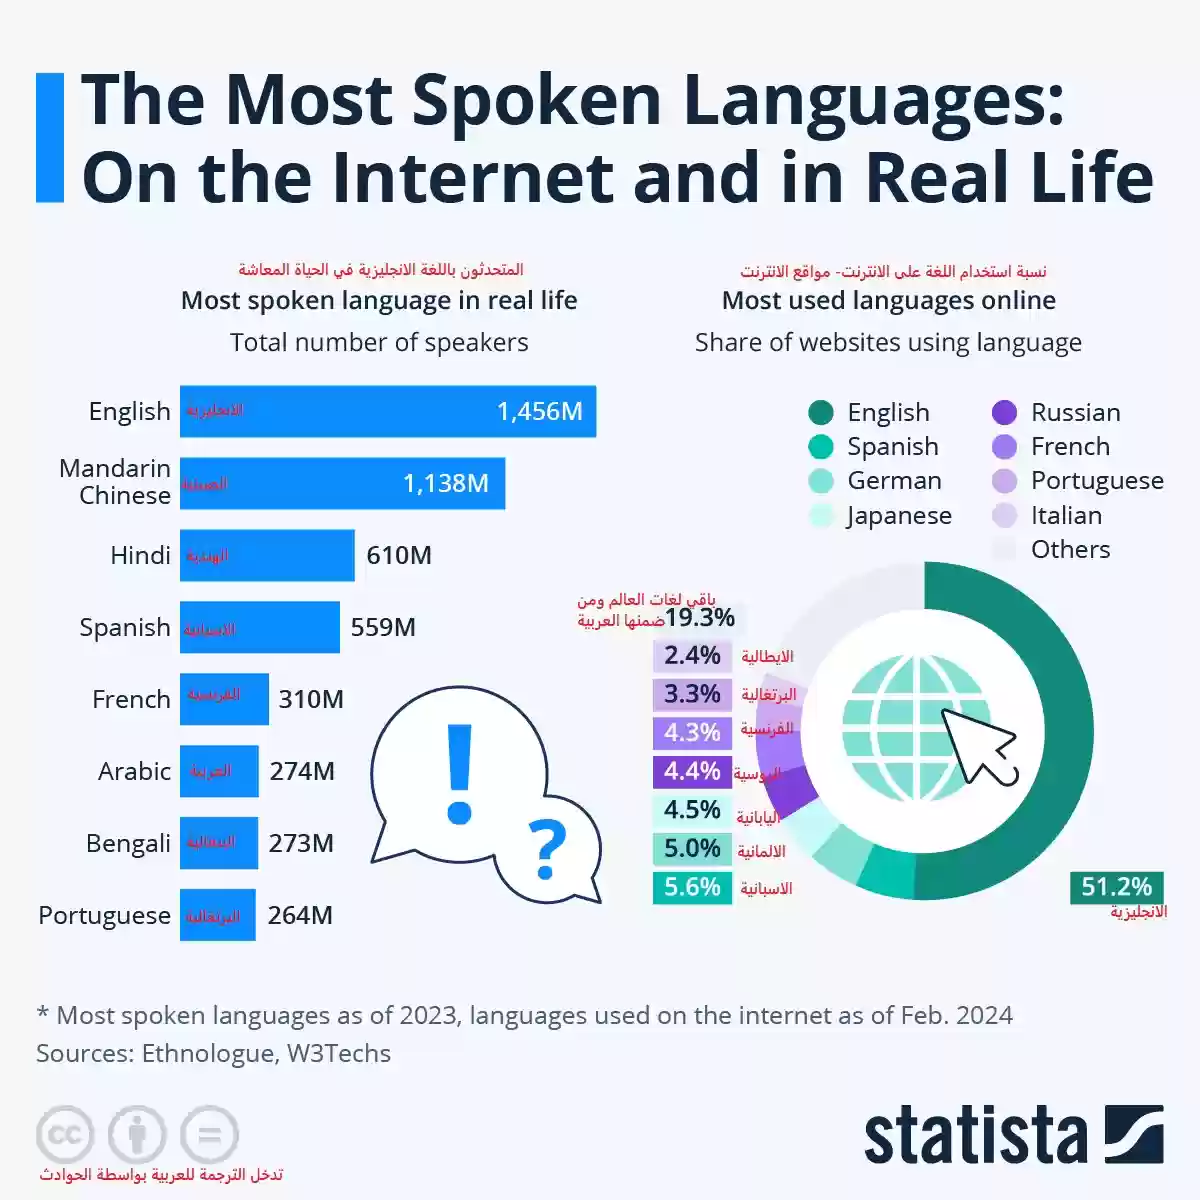 انتشار اللغة في الواقع وعلى الانترنت